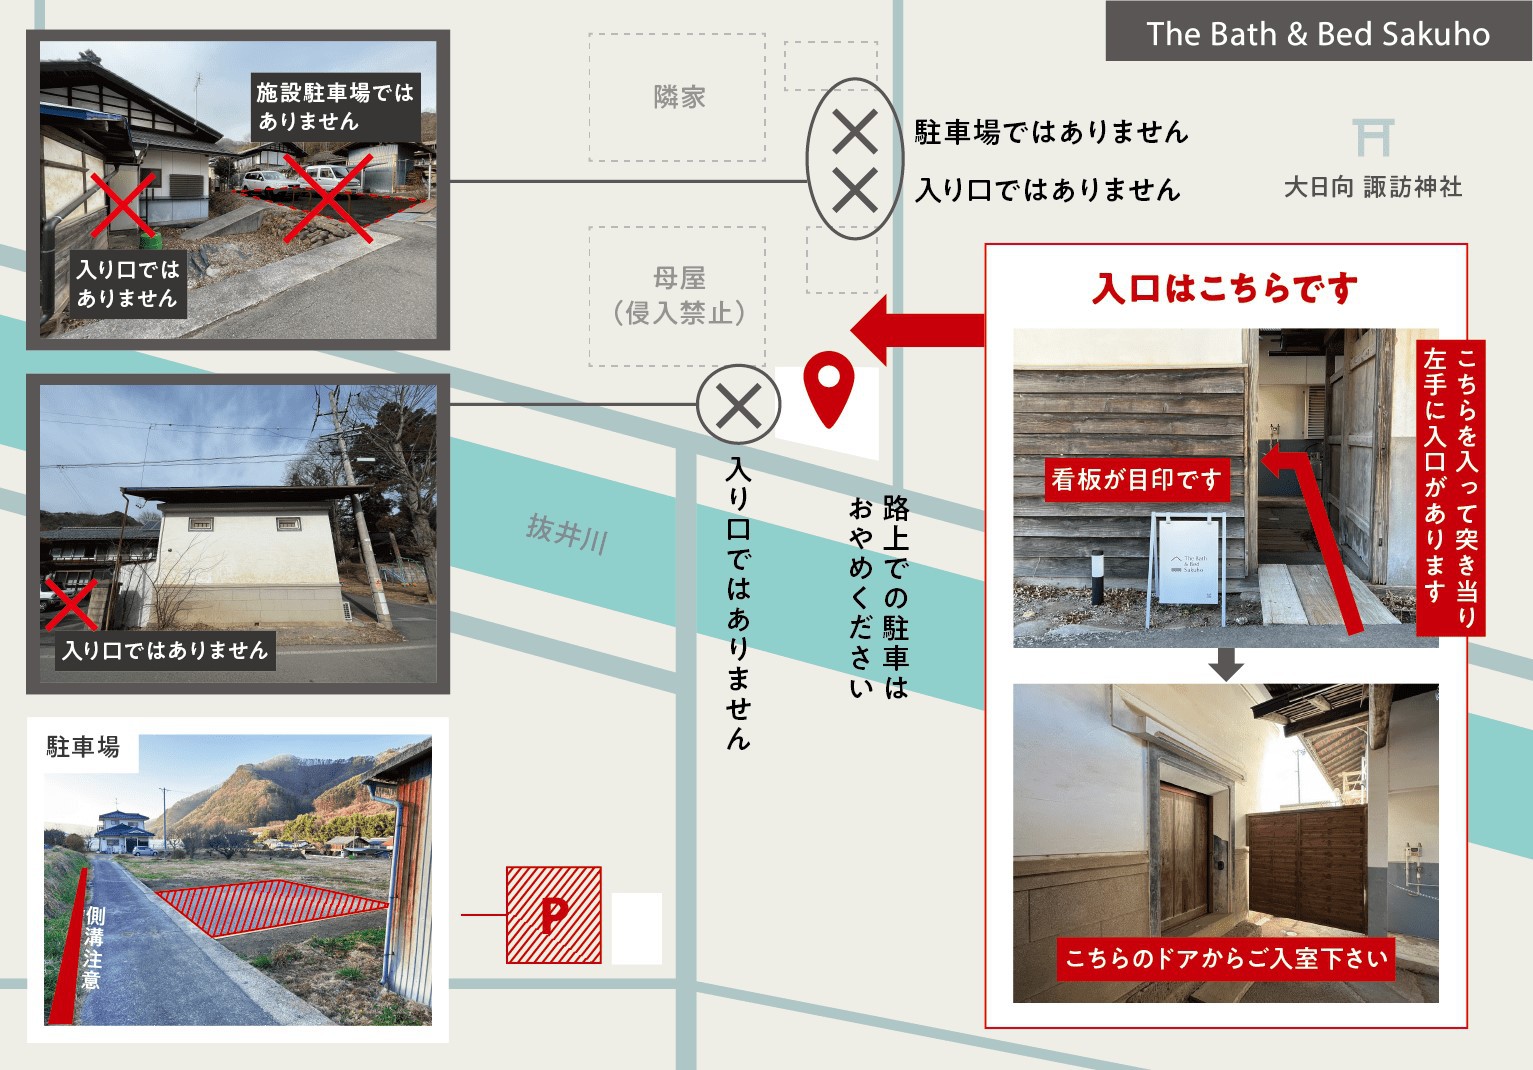 【1日1組限定】日本の蔵を改装したバスとベッドがメインの空間で「蔵ごもり」という特別な体験を。